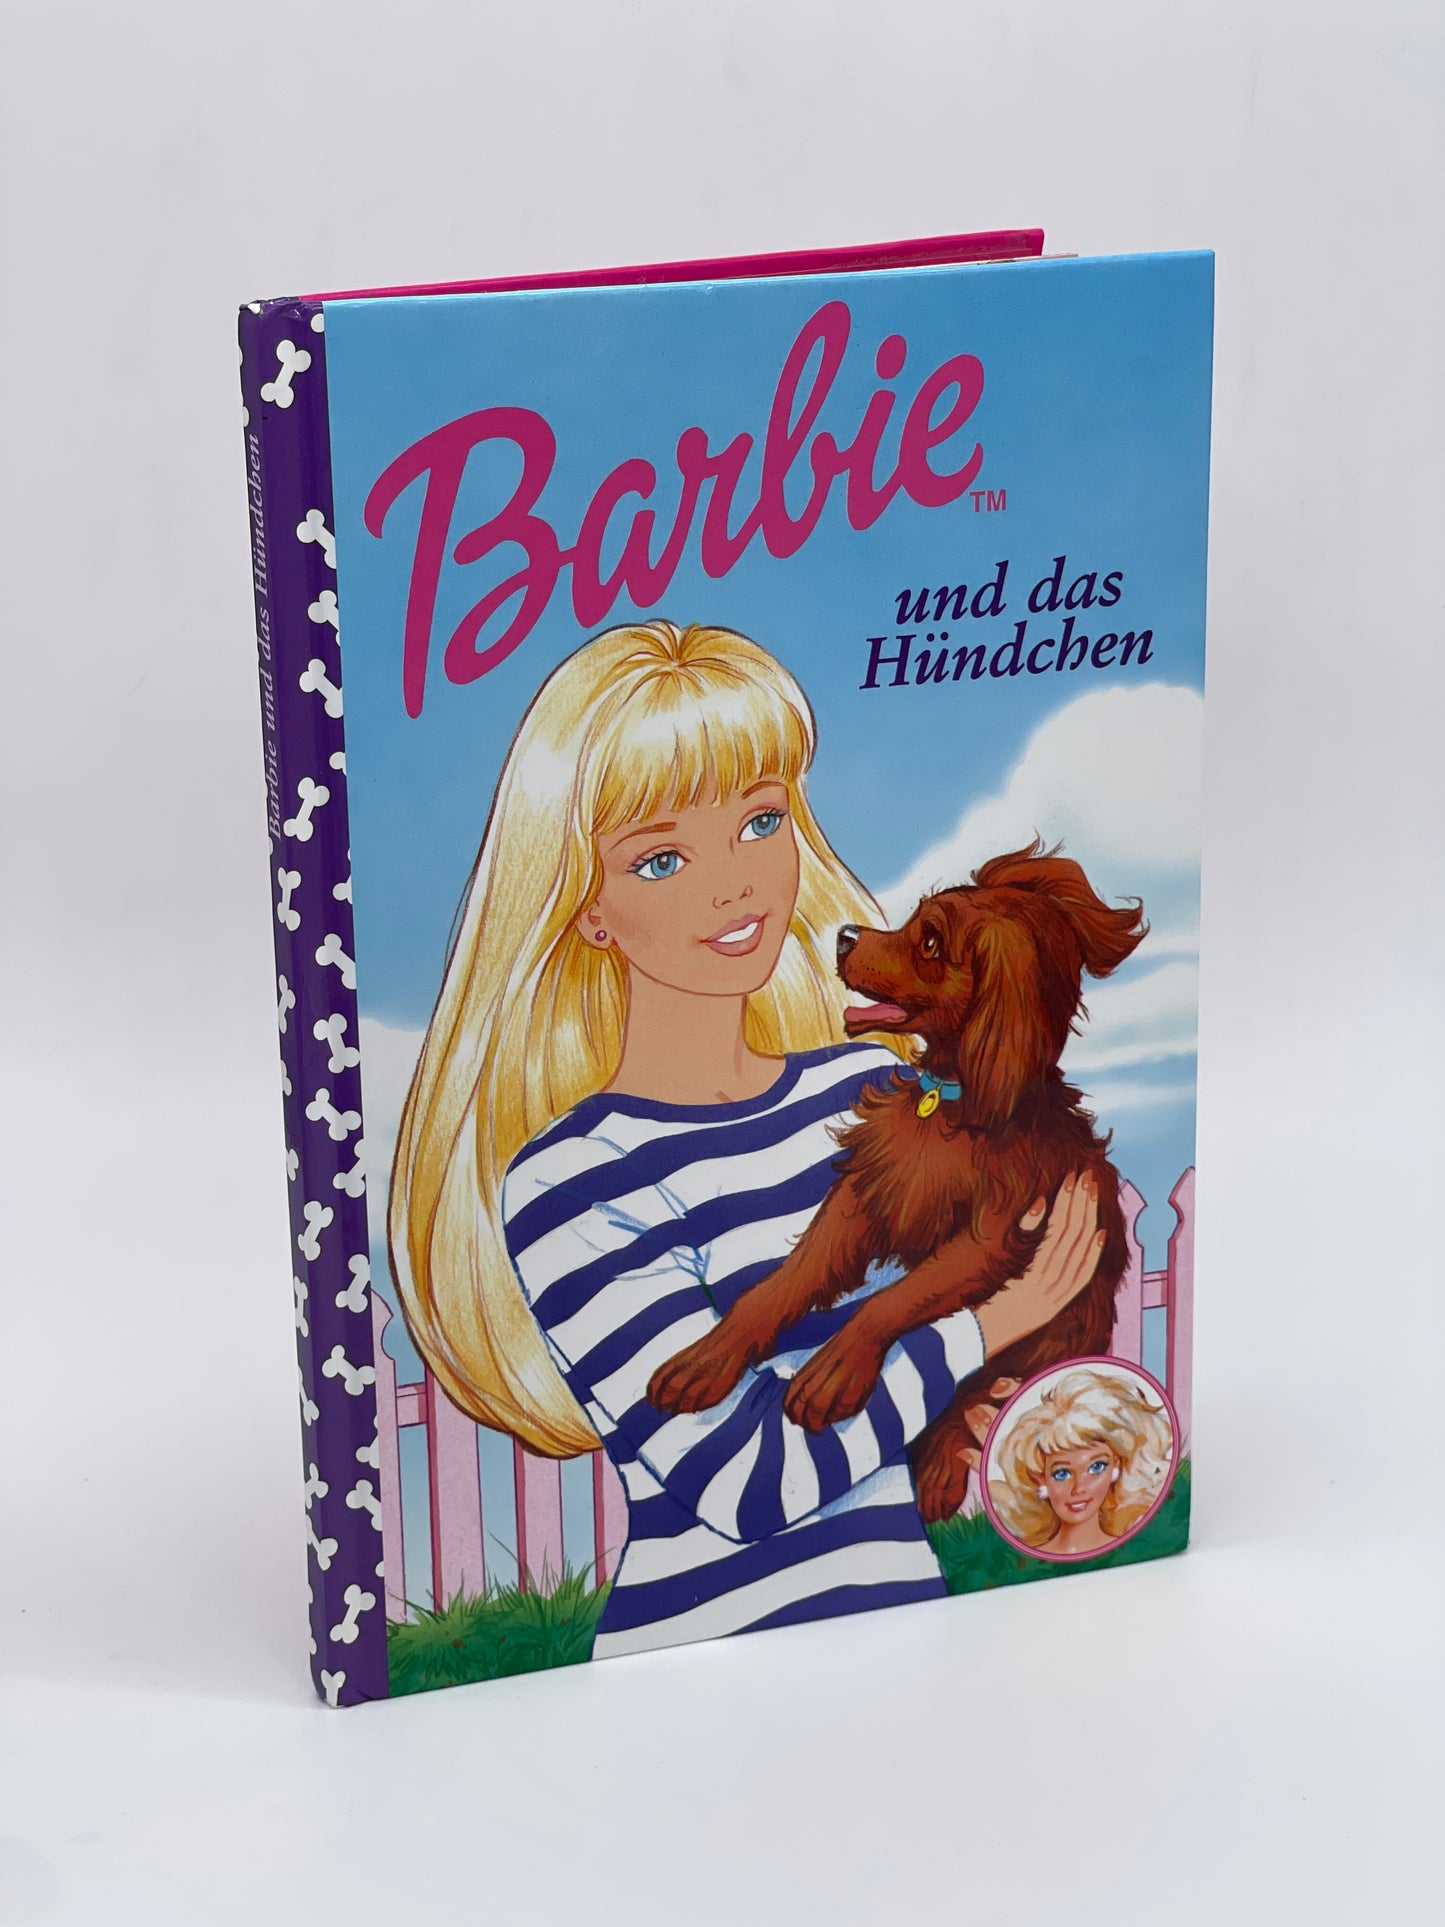 Barbie Kinderbuch "Barbie und das Hündchen" Egmont Horizont Verlag (1997)